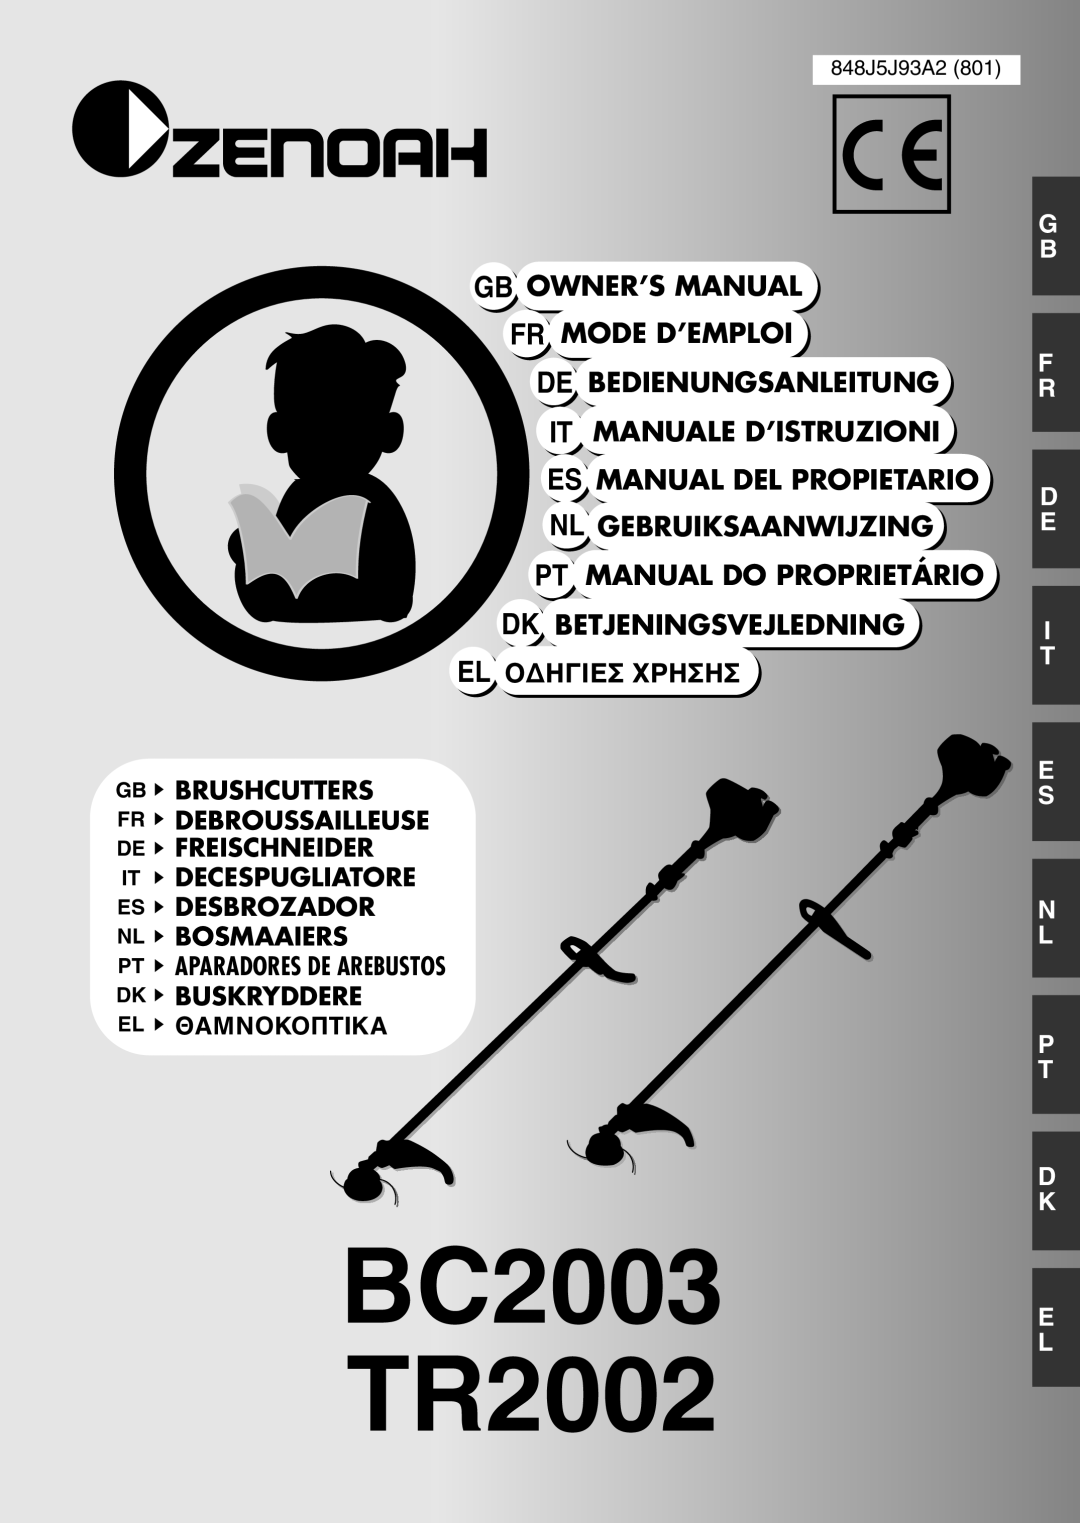 Zenoah owner manual BC2003 TR2002, It Manuale D’Istruzioni Es Manual Del Propietario, Dk Betjeningsvejledning 